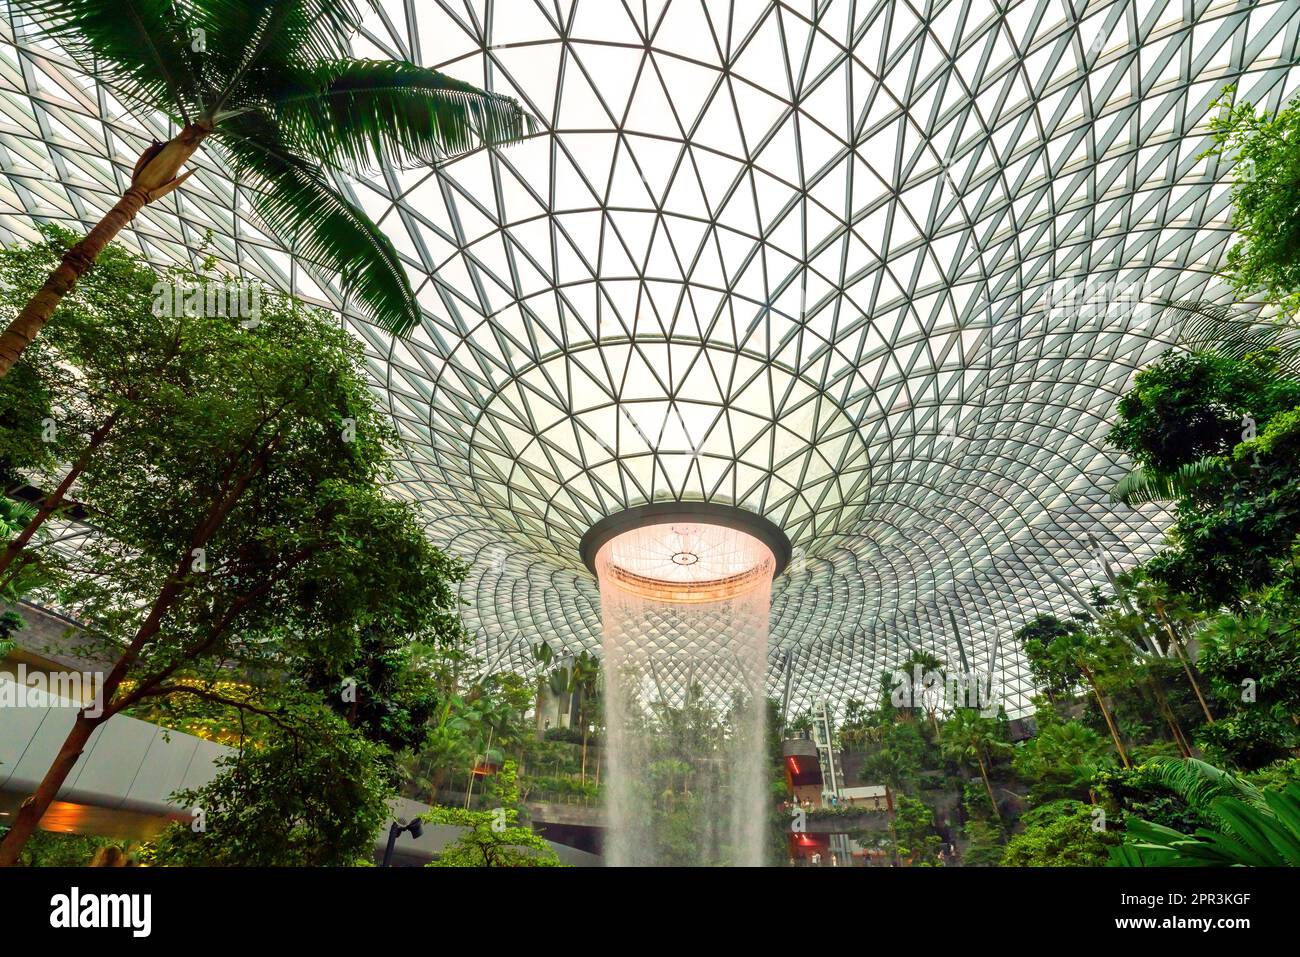 Singapore. Gioiello, cascata e foresta interna all'Aeroporto Changi di Singapore. Singapore Changi è stato incoronato il miglior aeroporto del mondo. Foto Stock